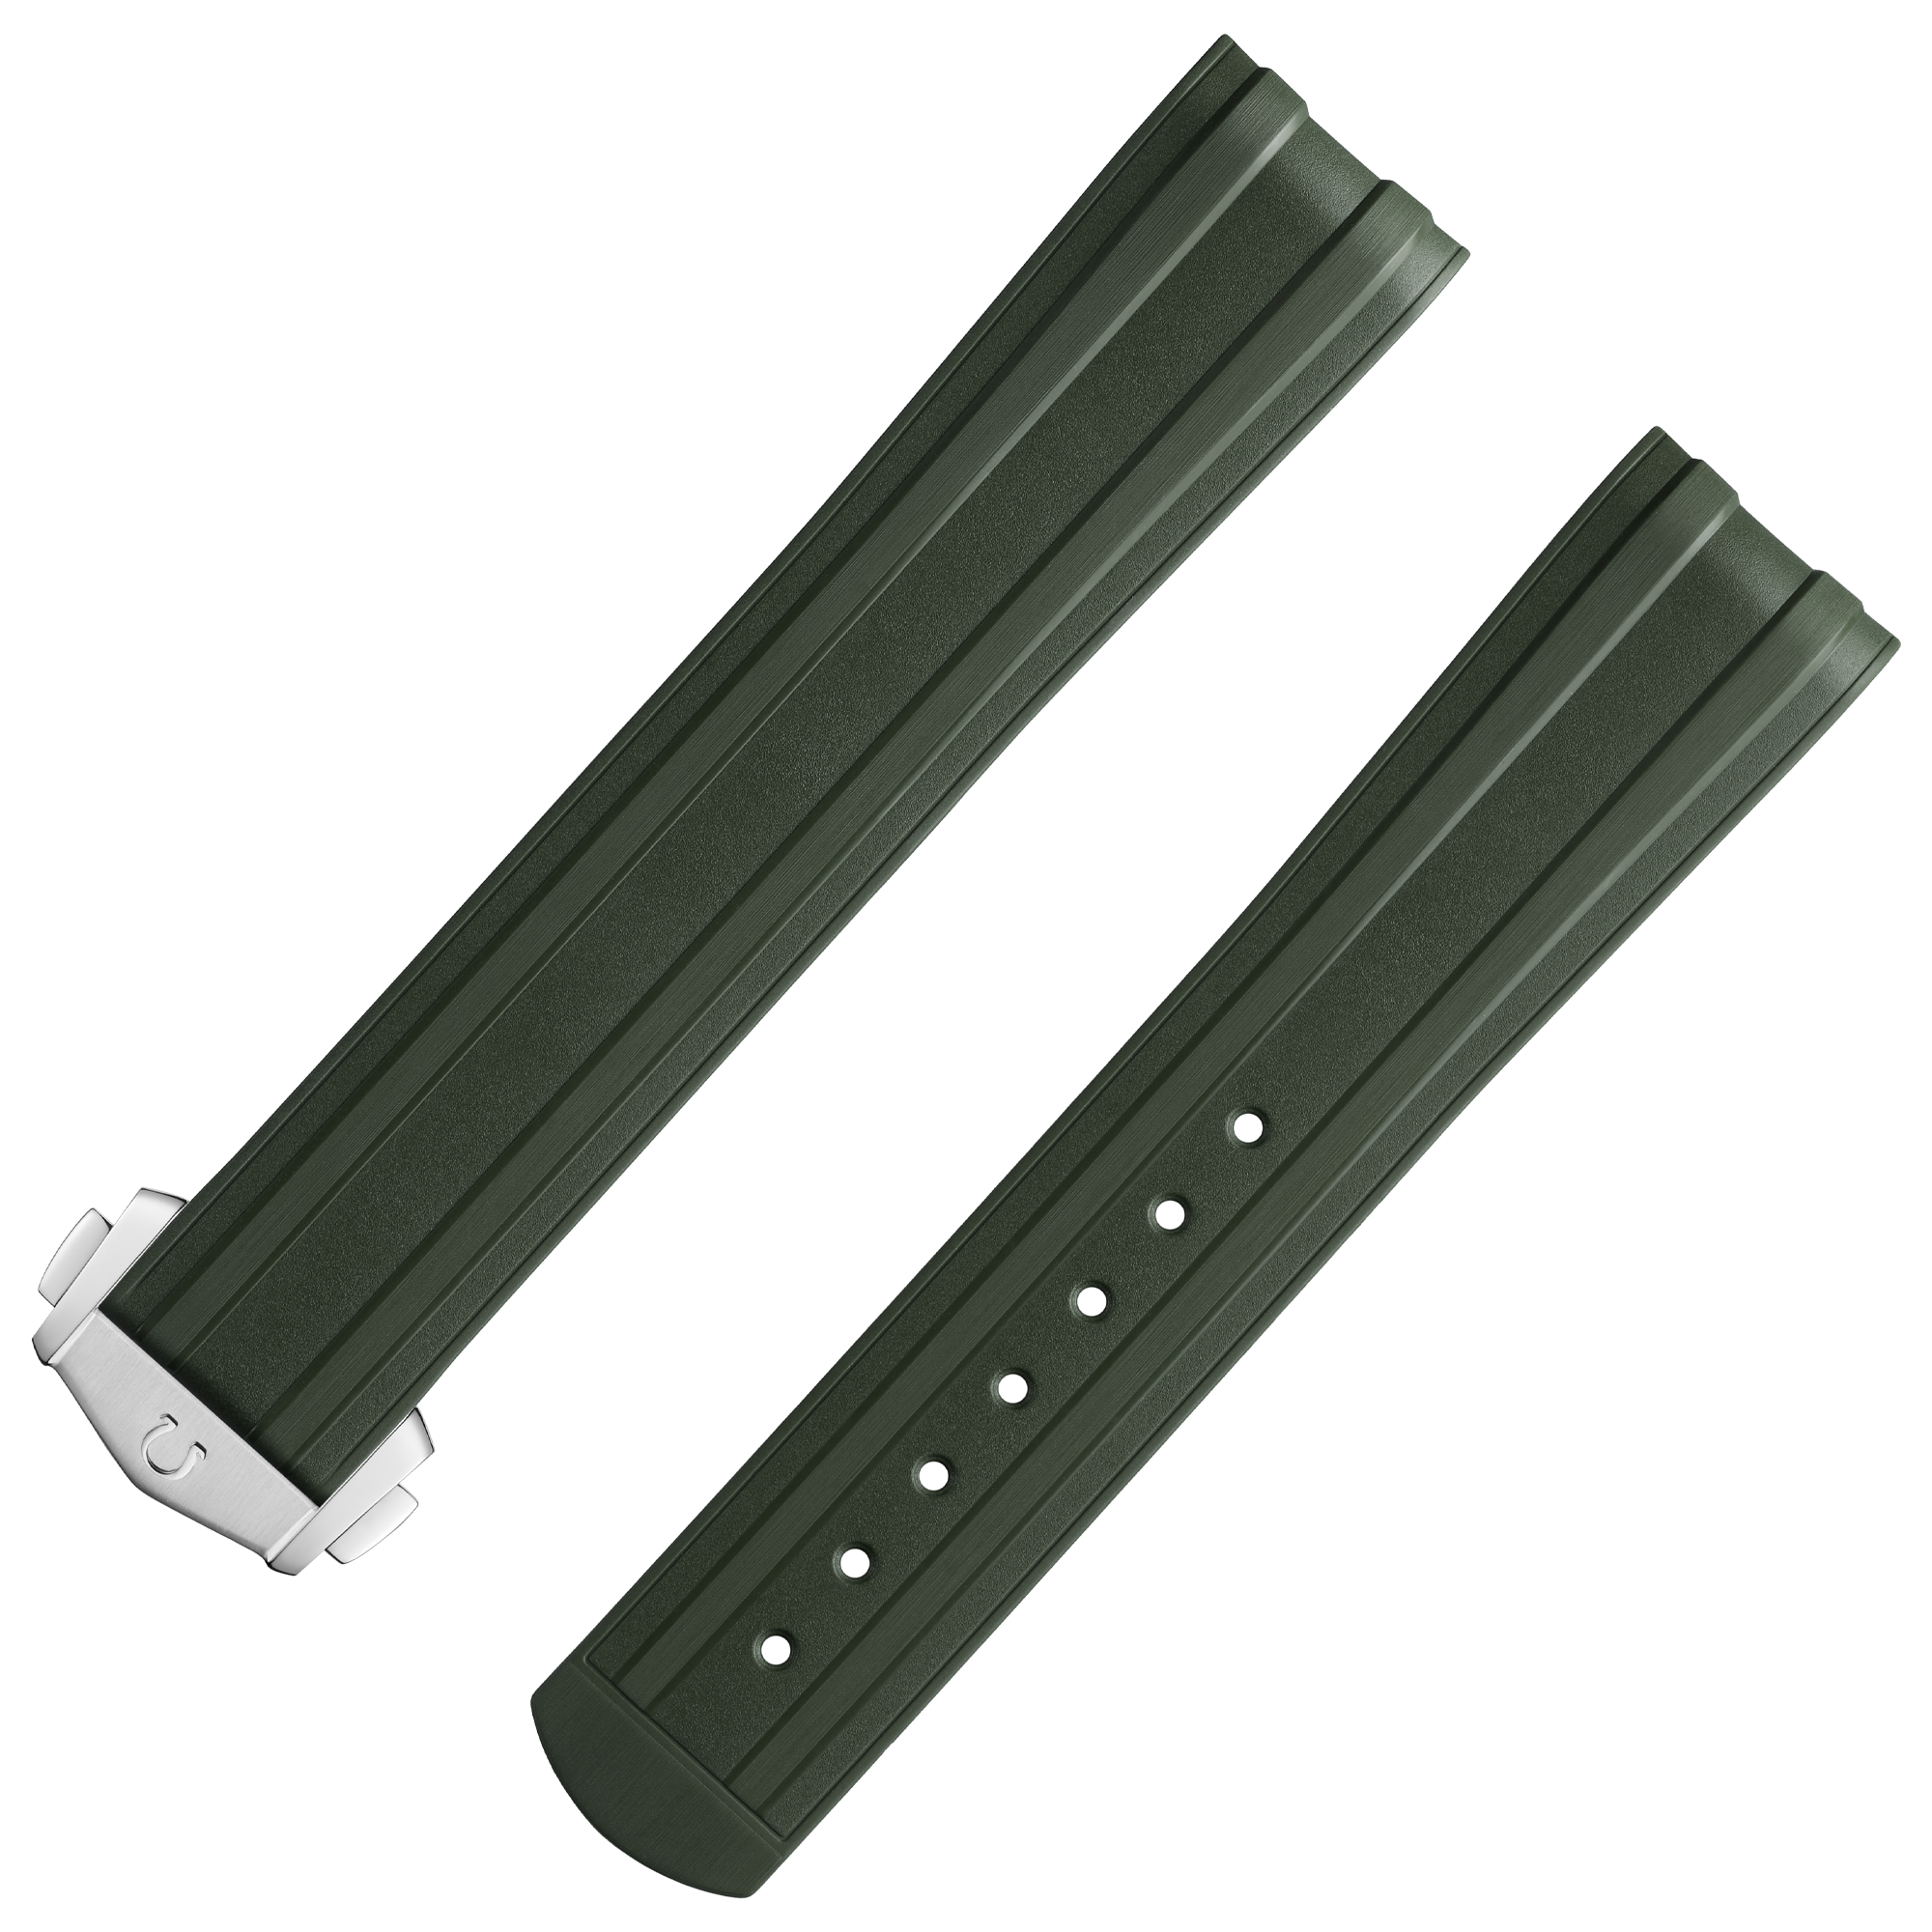 Zweiteiliges armband - Seamaster Diver 300M grünes Kautschukarmband mit Faltschließe - 032Z017213